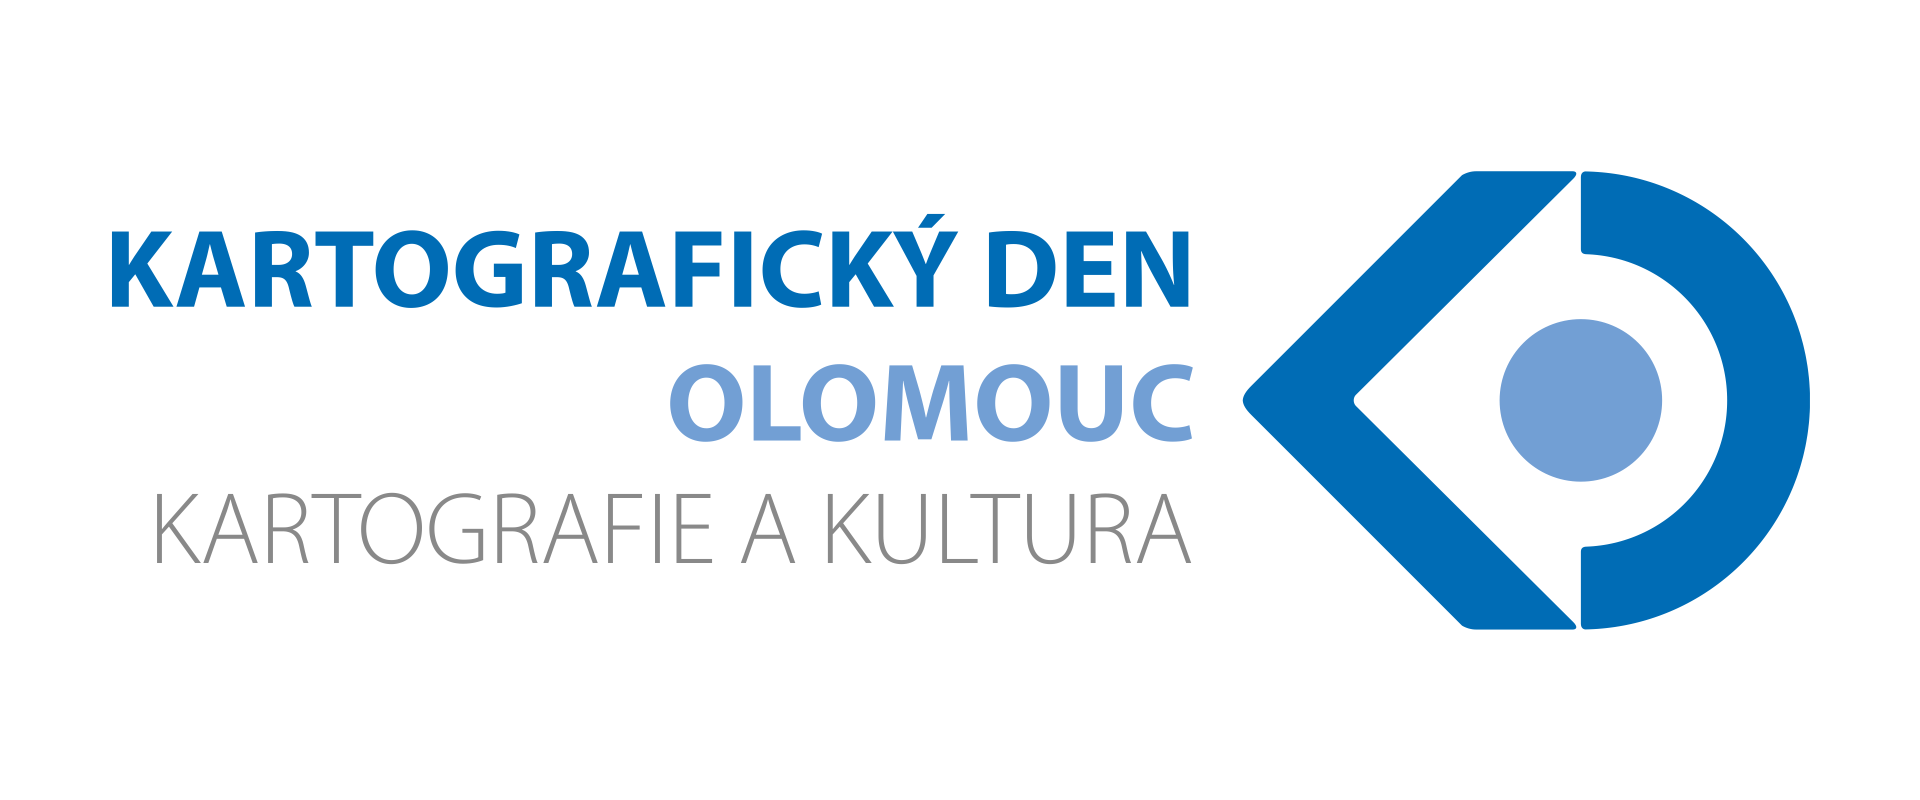 18. Kartografický den Olomouc